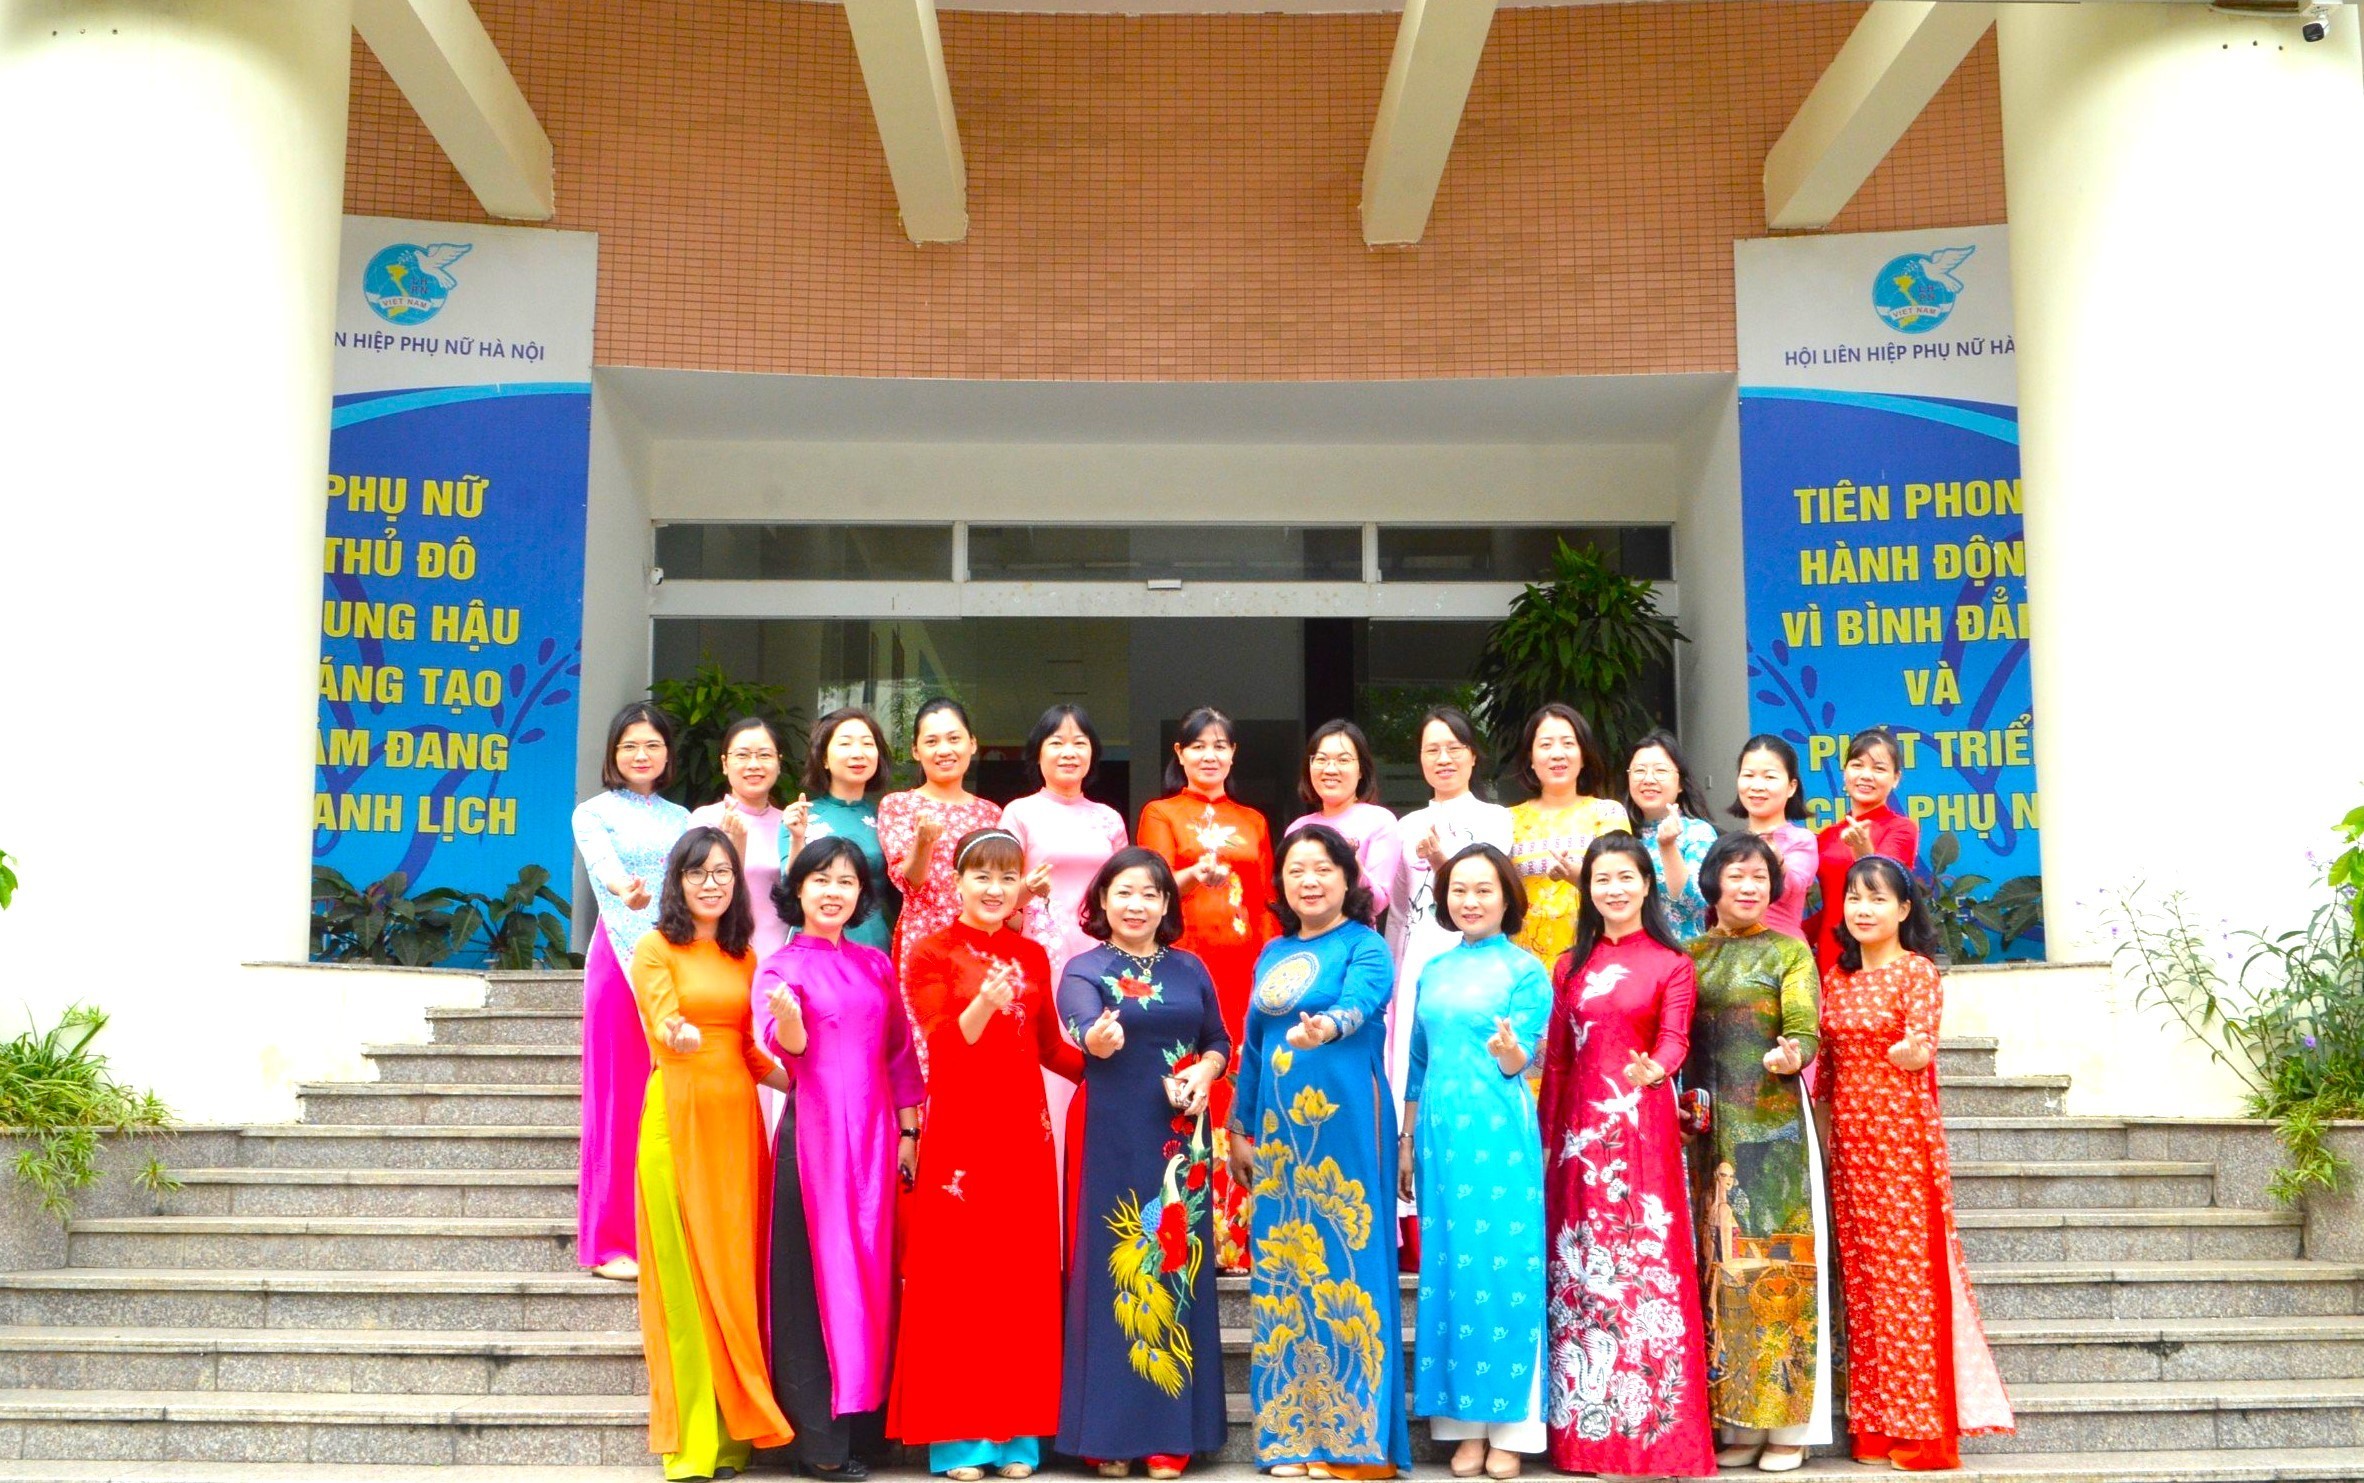 Phụ nữ Hà Nội tổ chức nhiều hoạt động kỷ niệm 70 năm Ngày Giải phóng Thủ đô